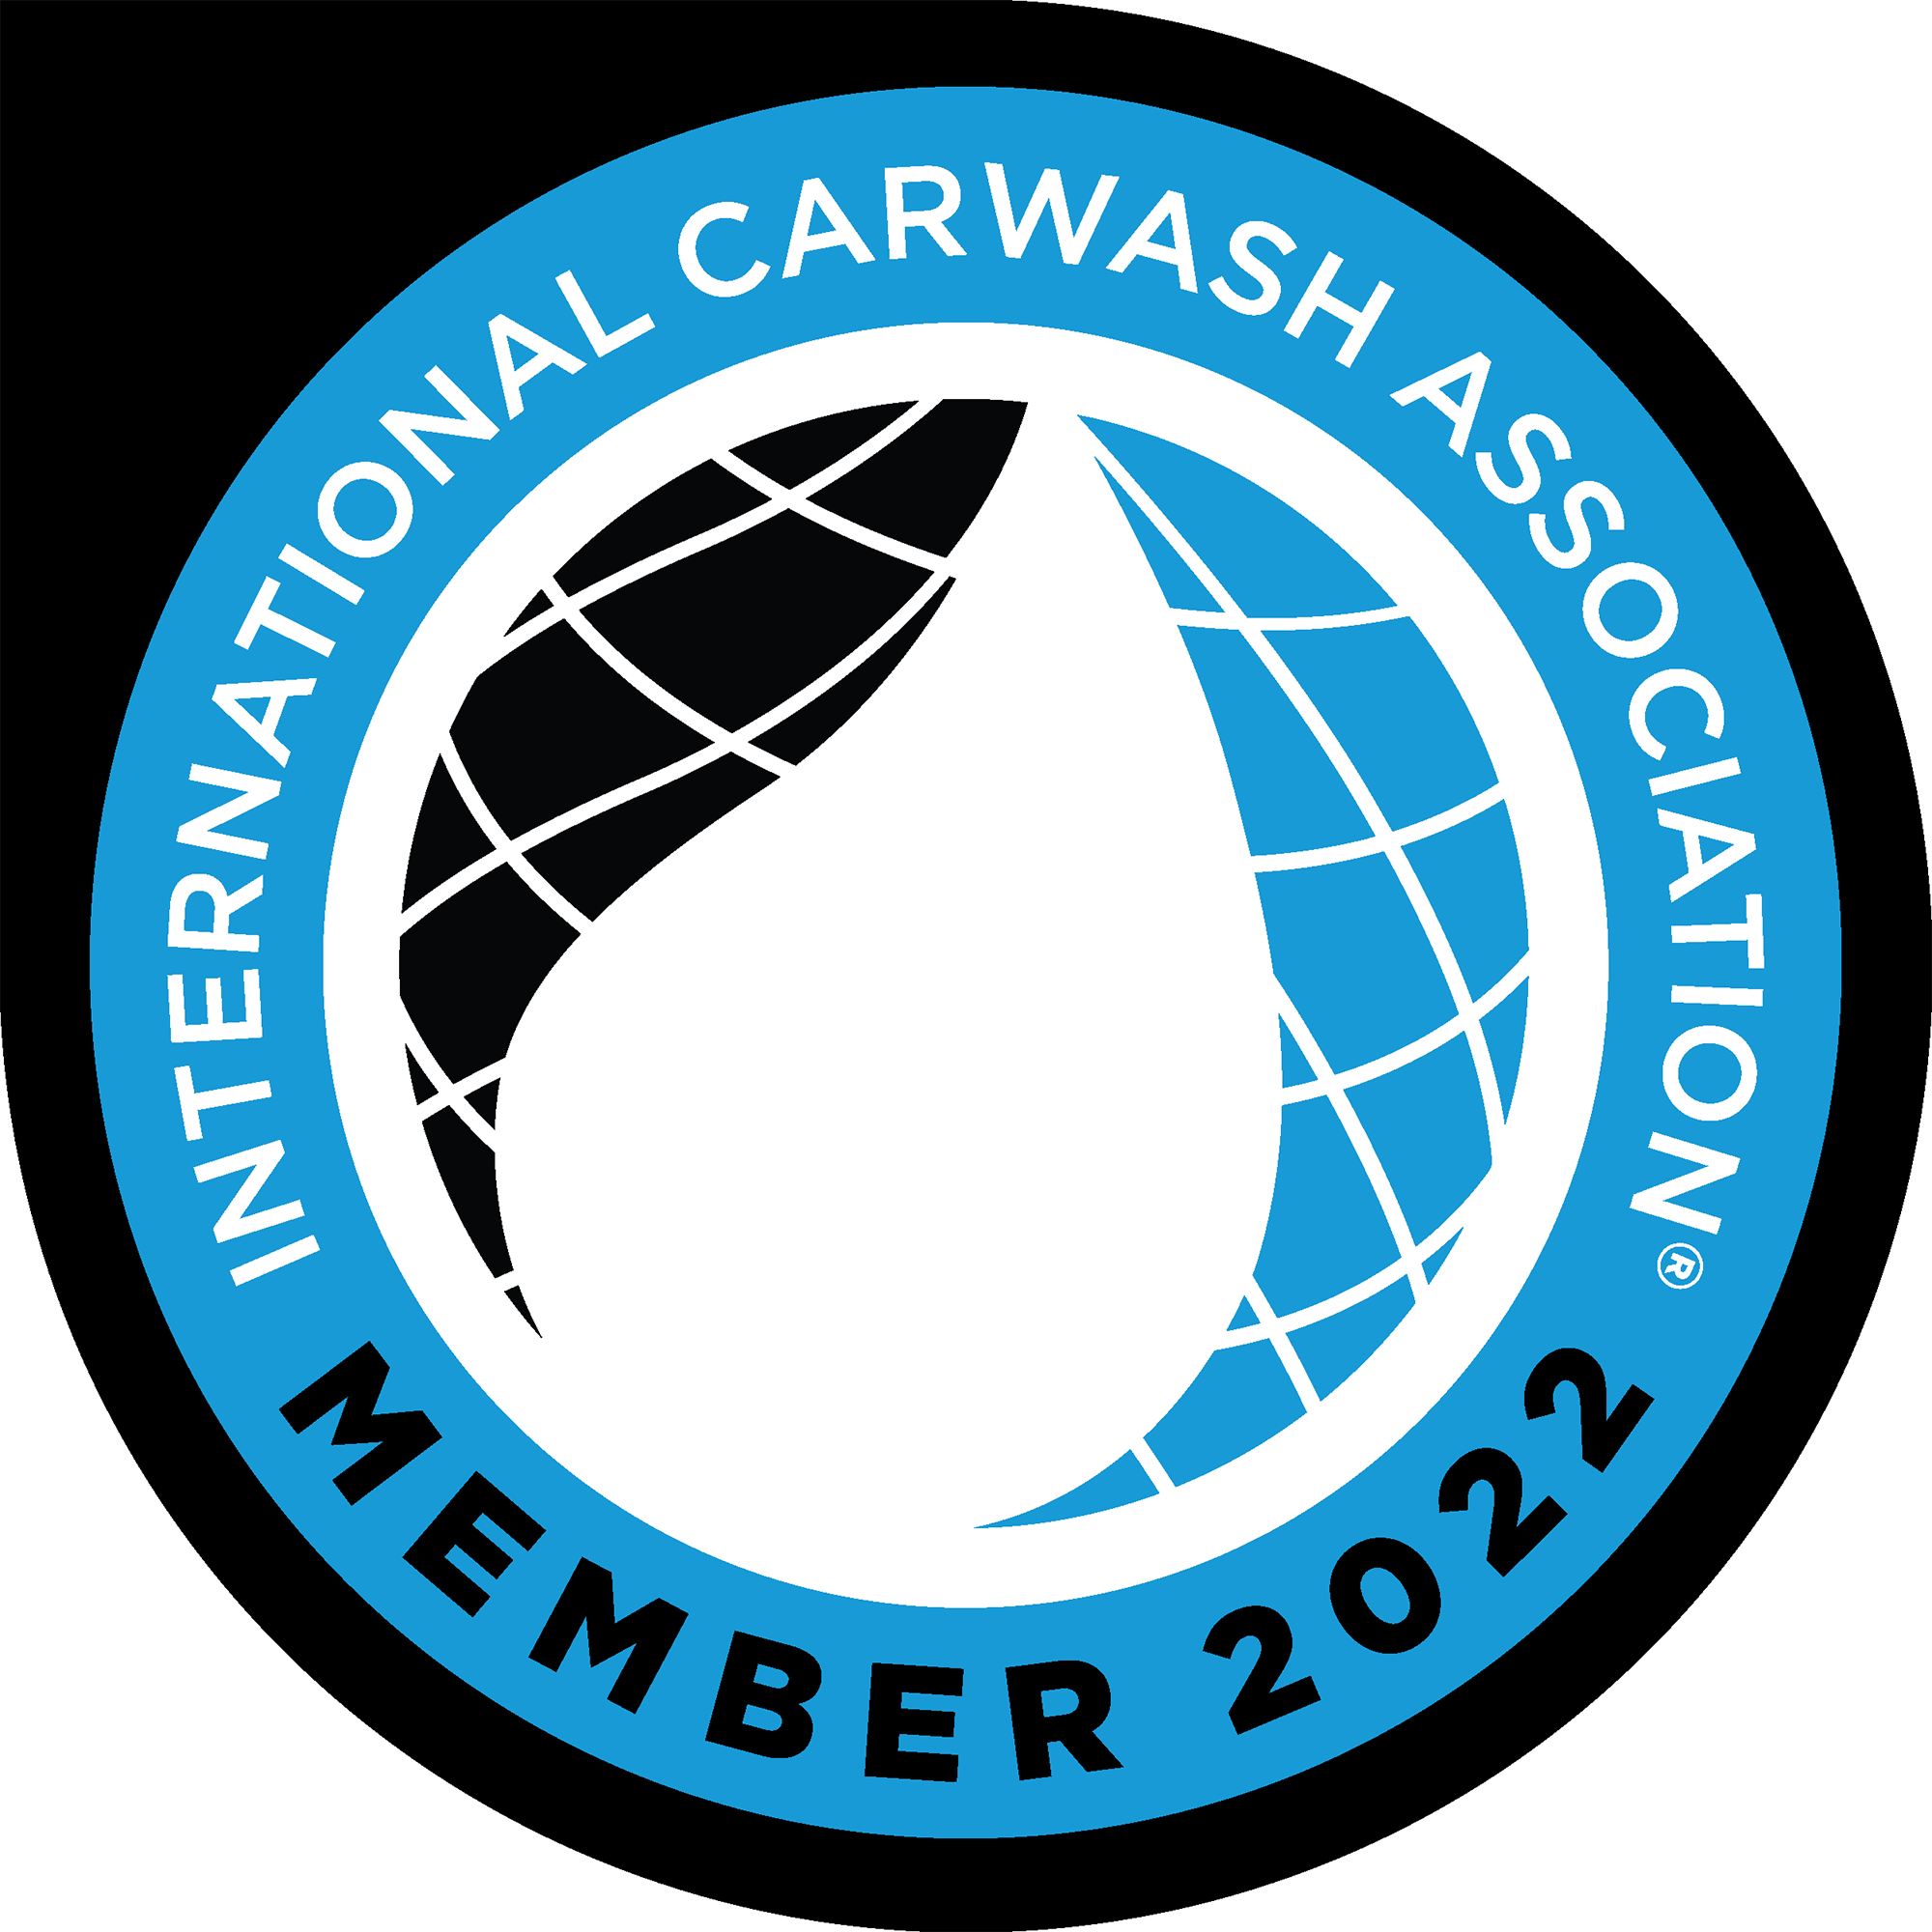 International Carwash Association member